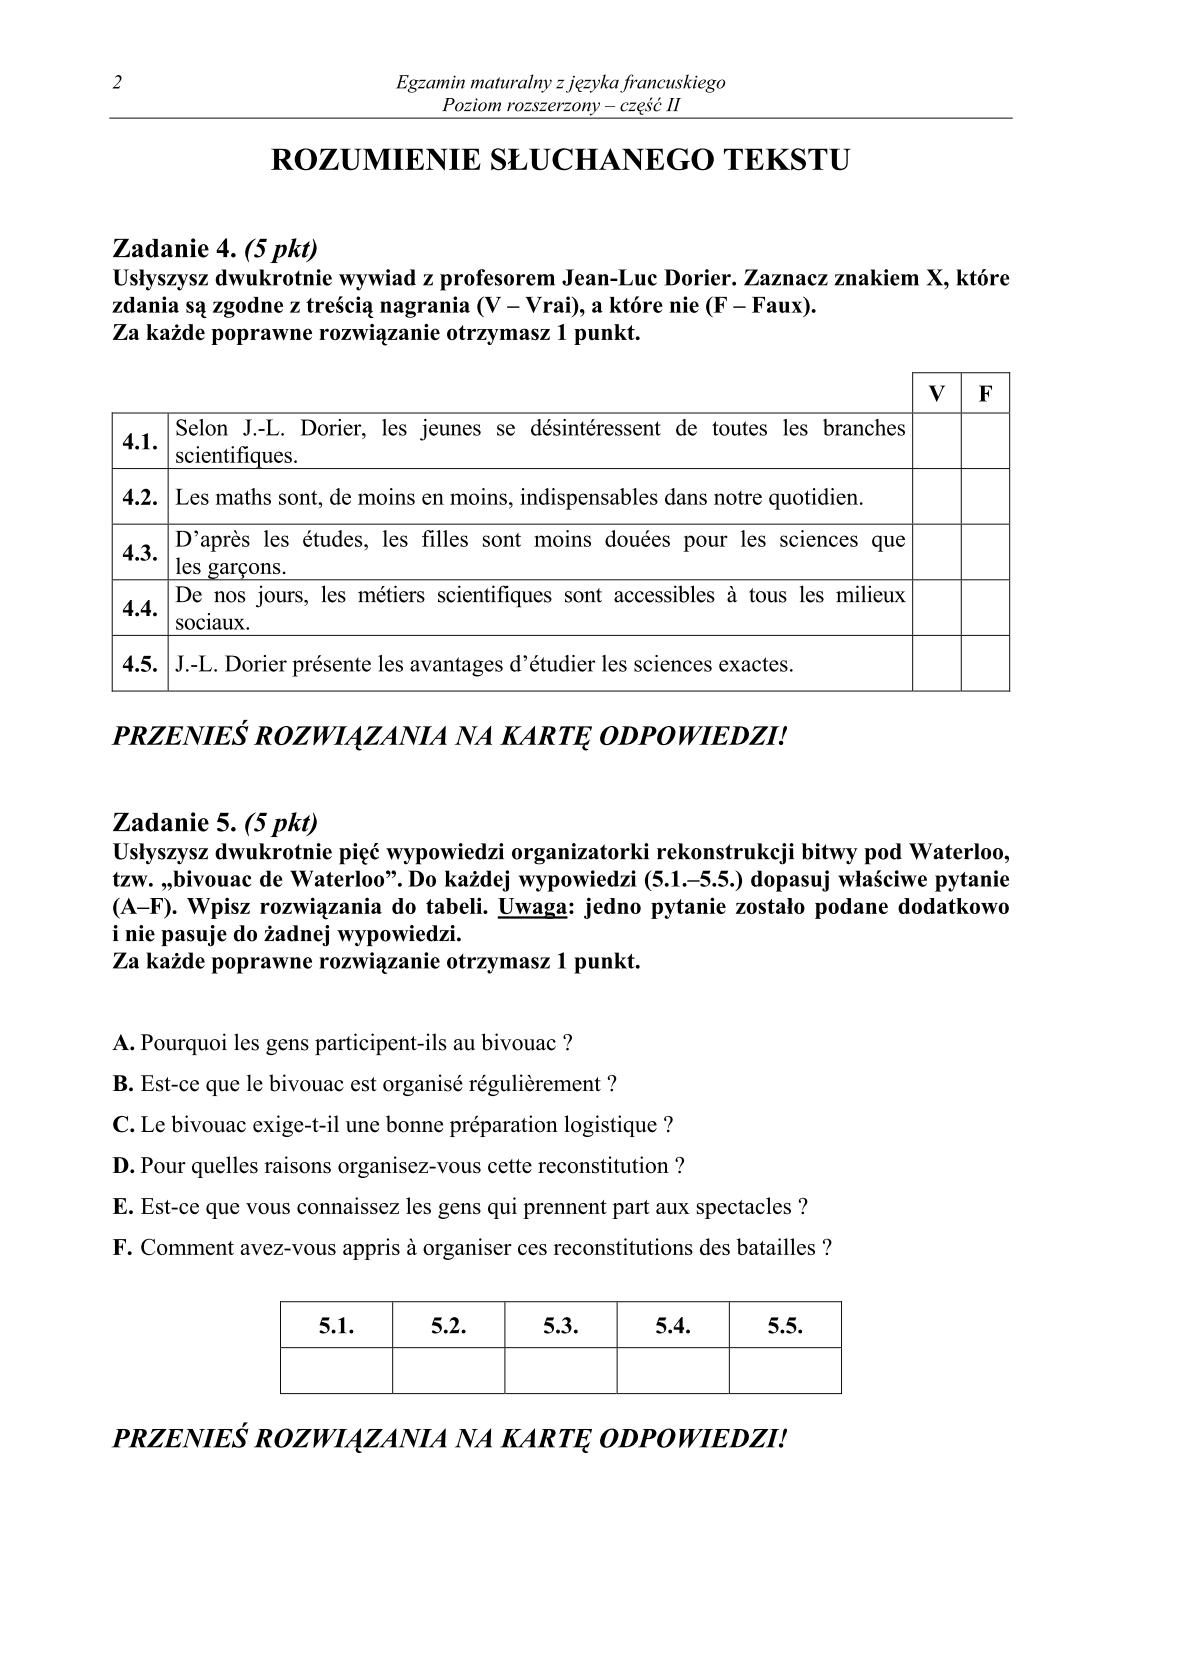 pytania-jezyk-francuski-poziom-rozszerzony-czesc-II-matura-2014-str.2